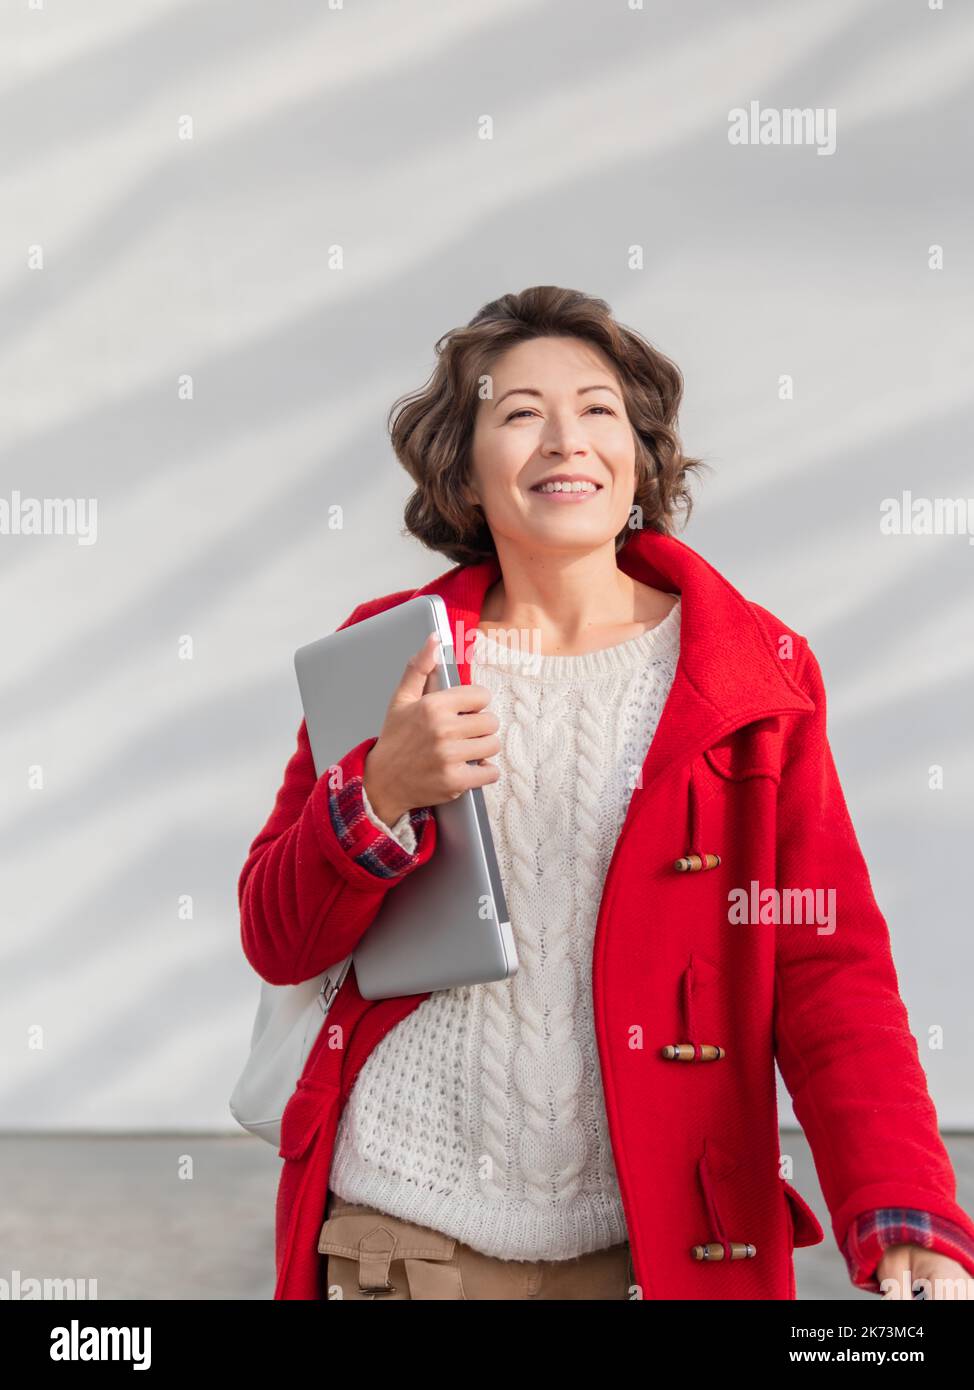 Donna ricciola in mantello rosso è in piedi da parete bianca. Studente adulto sorridente con un computer portatile. Freelance con dispositivo portatile per il lavoro. Stile di vita moderno. Foto Stock